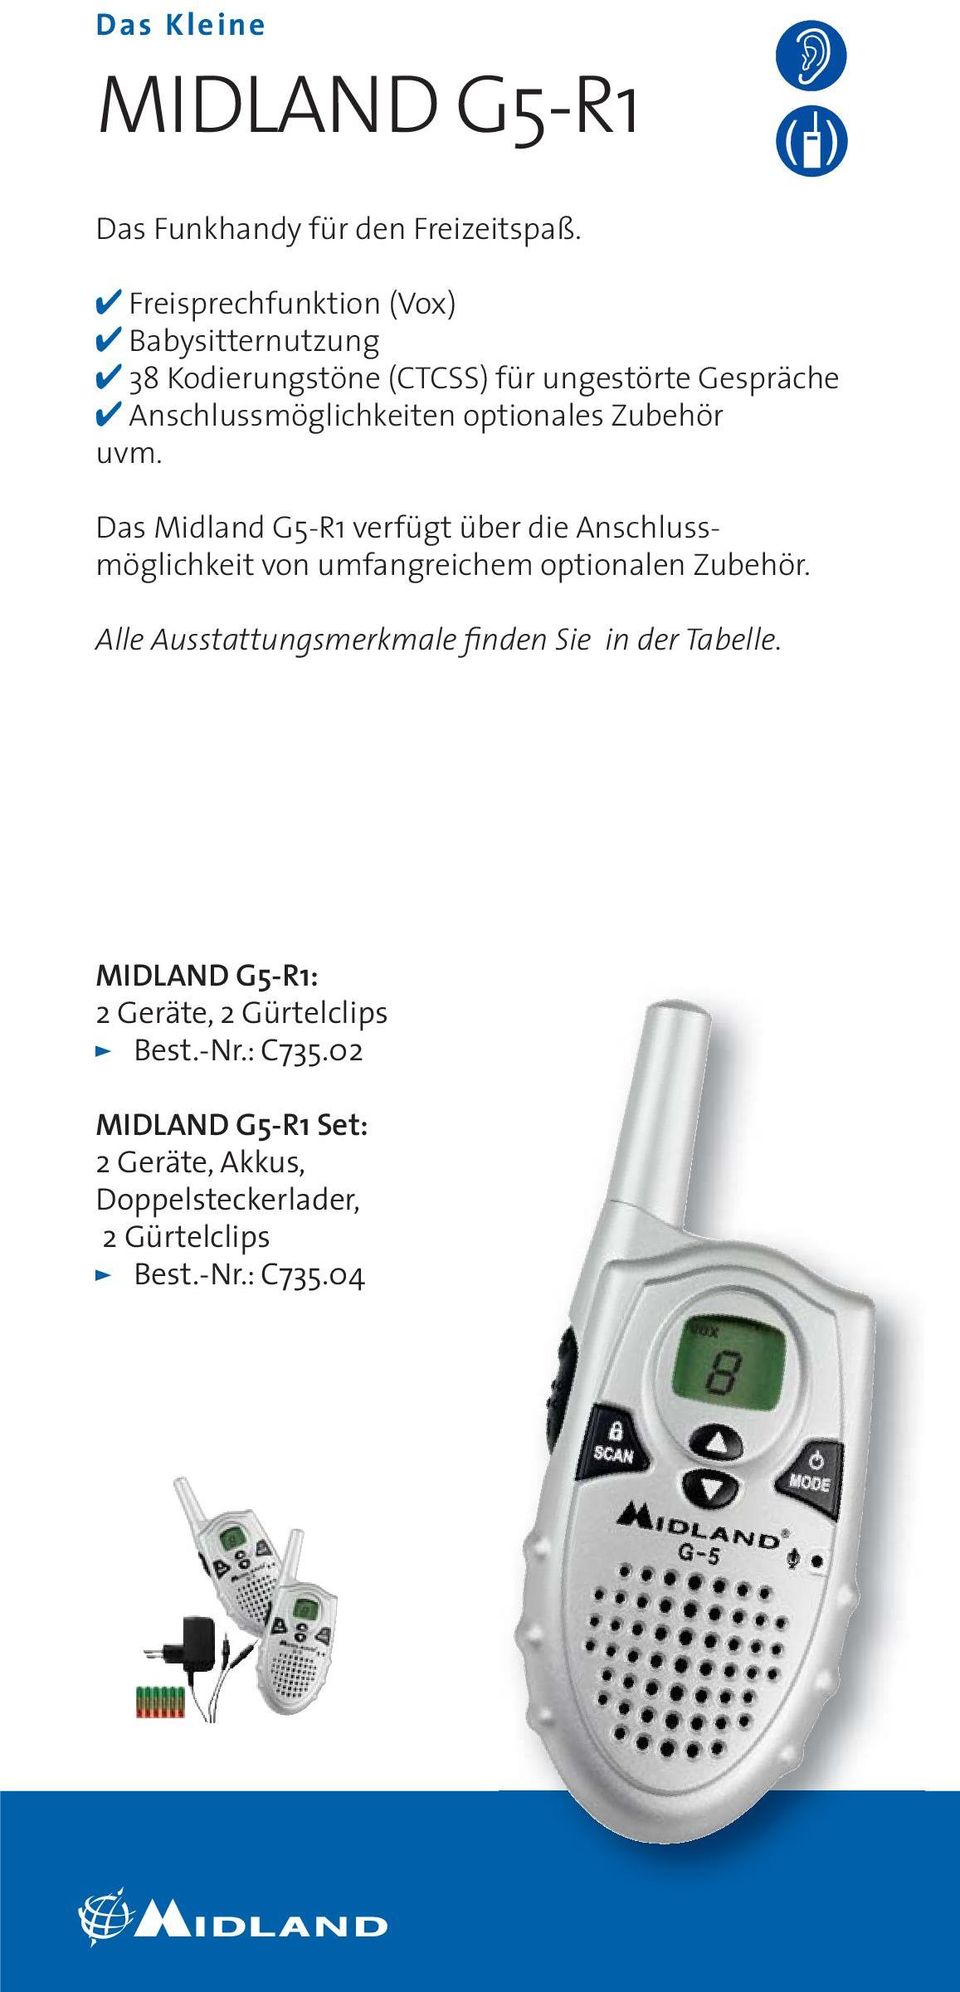 optionales Zubehör uvm. Das Midland G5-R1 verfügt über die Anschlussmöglichkeit von umfangreichem optionalen Zubehör.